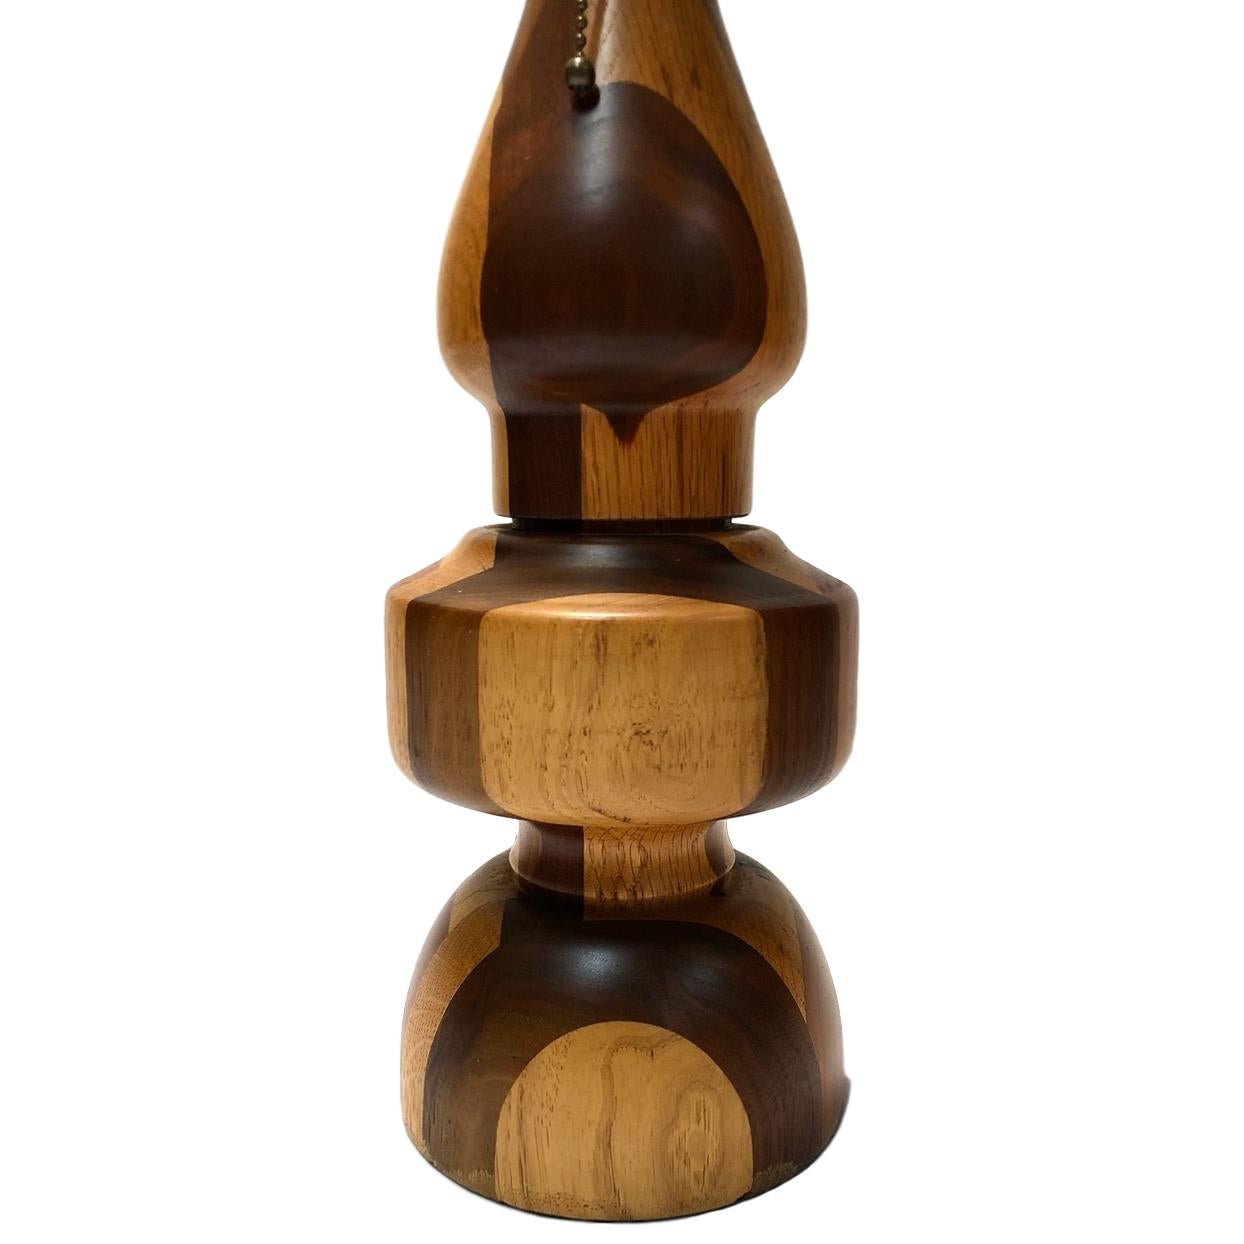 Une seule lampe de table italienne en marqueterie de bois tourné bicolore datant des années 1950.

Mesures :
Hauteur 14.5